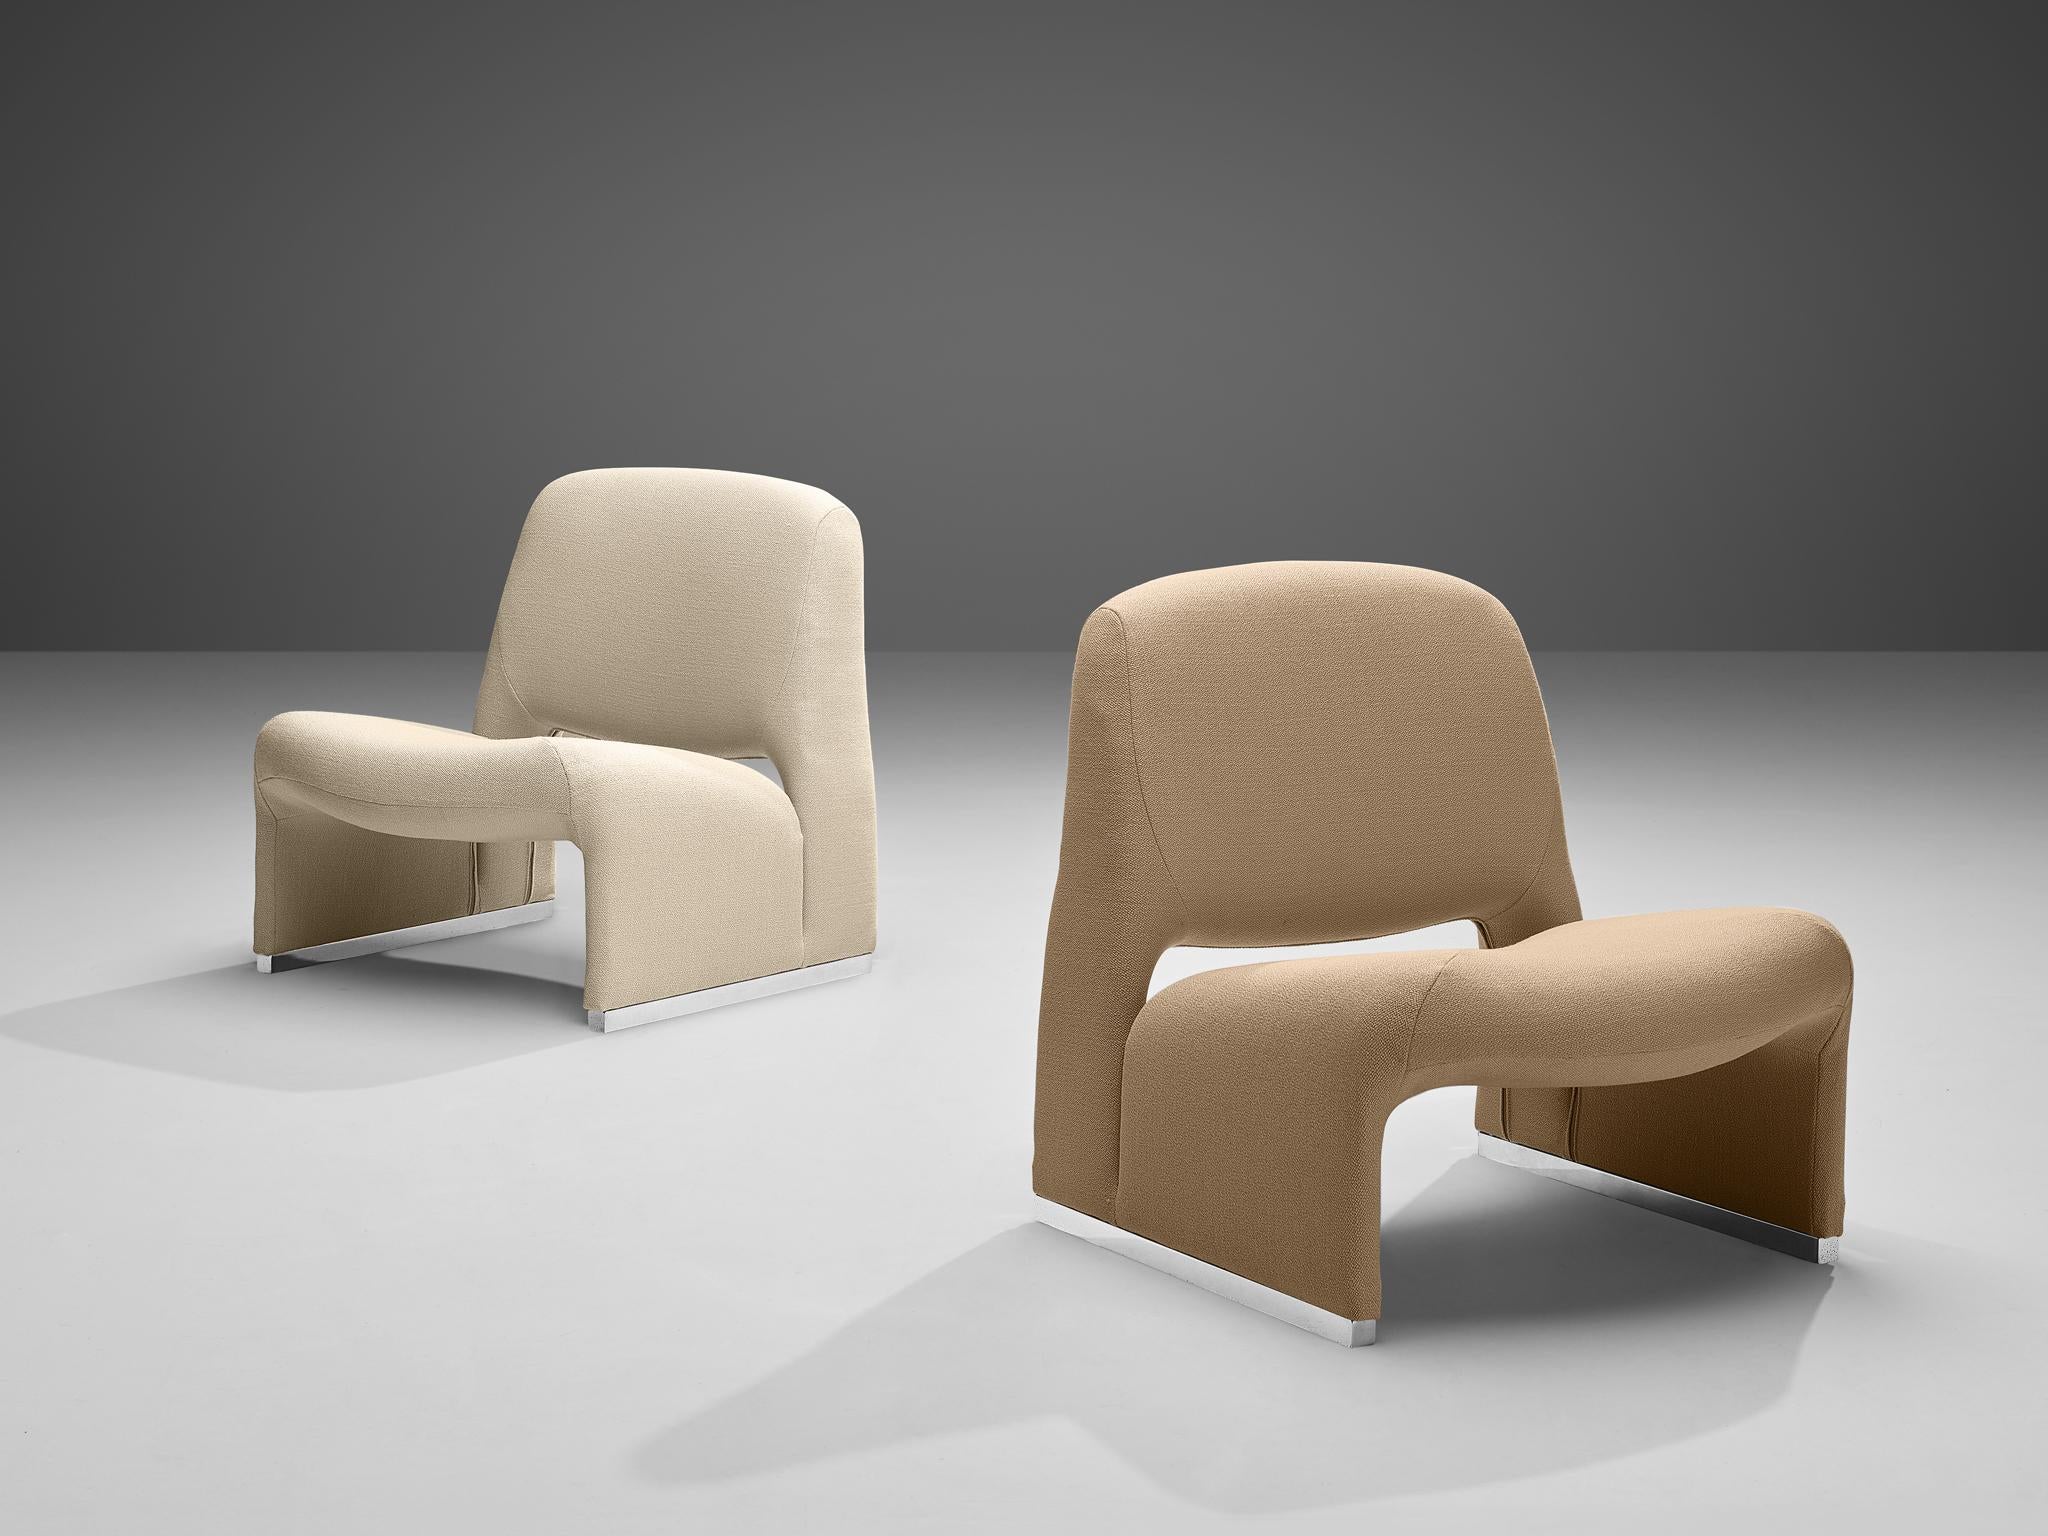 Loungesessel, Stoff, Aluminium, Italien, 1970er Jahre

Diese Sessel erinnern stark an den Sessel 